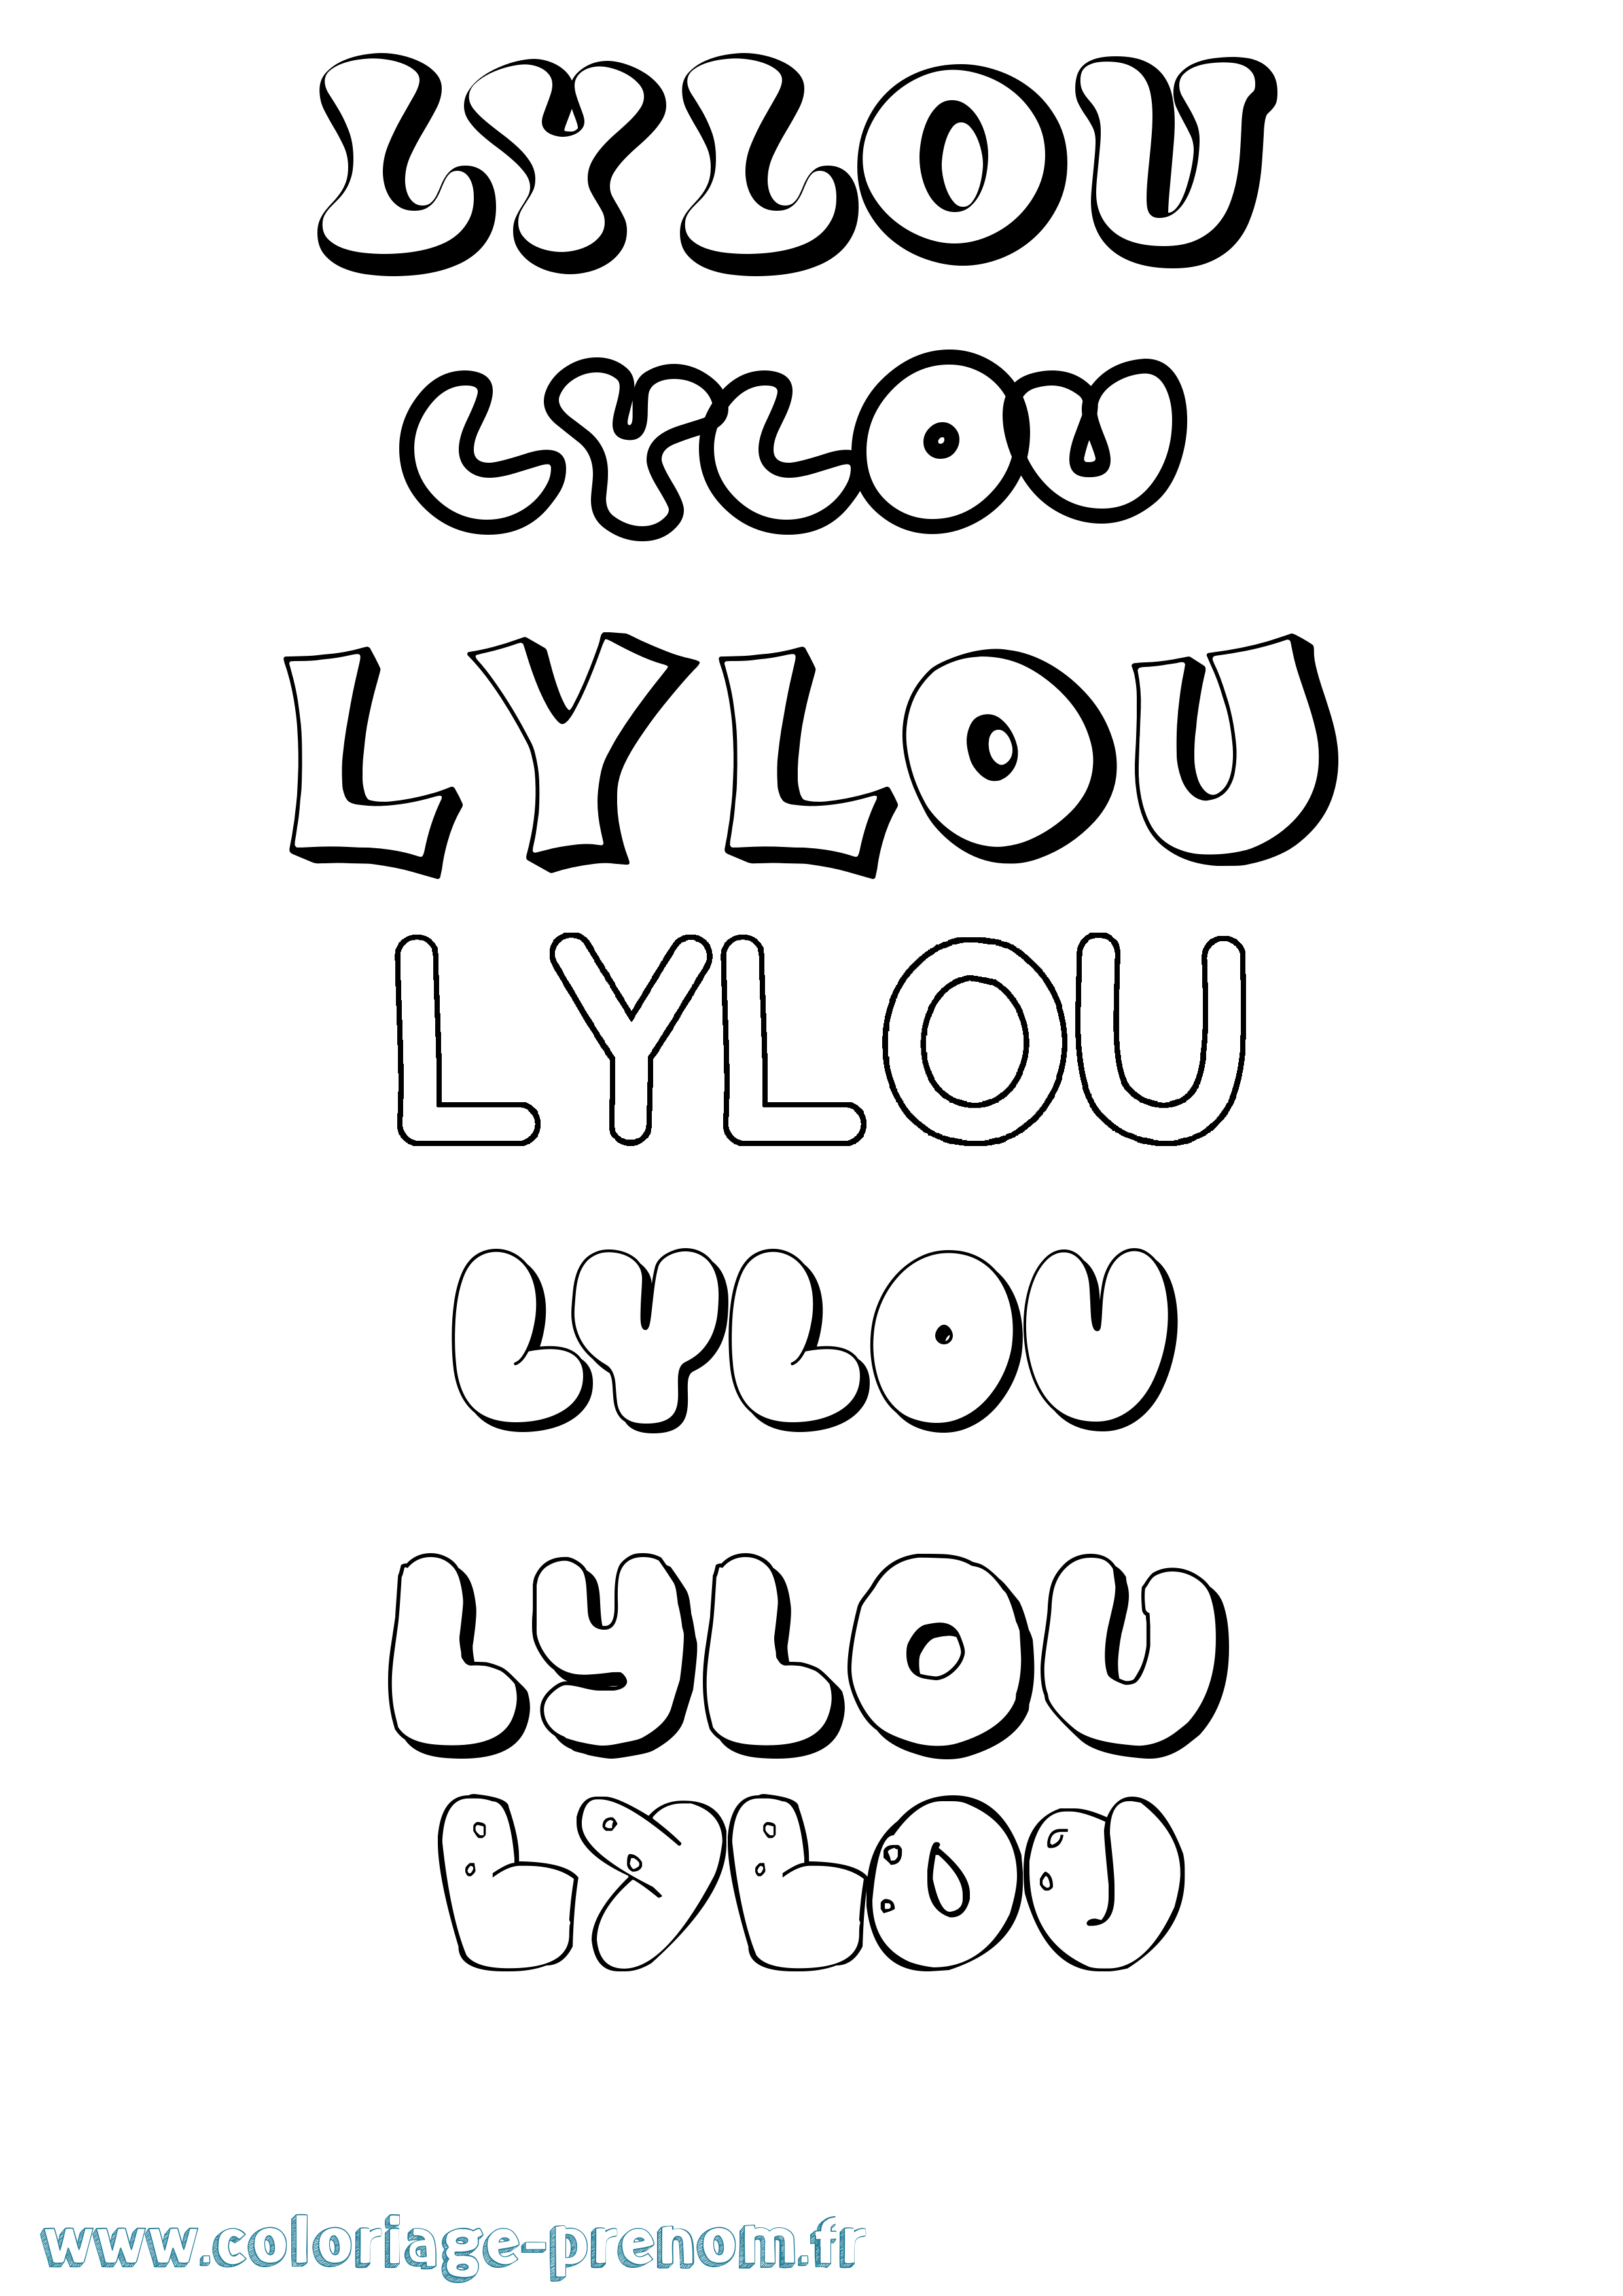 Coloriage prénom Lylou Bubble